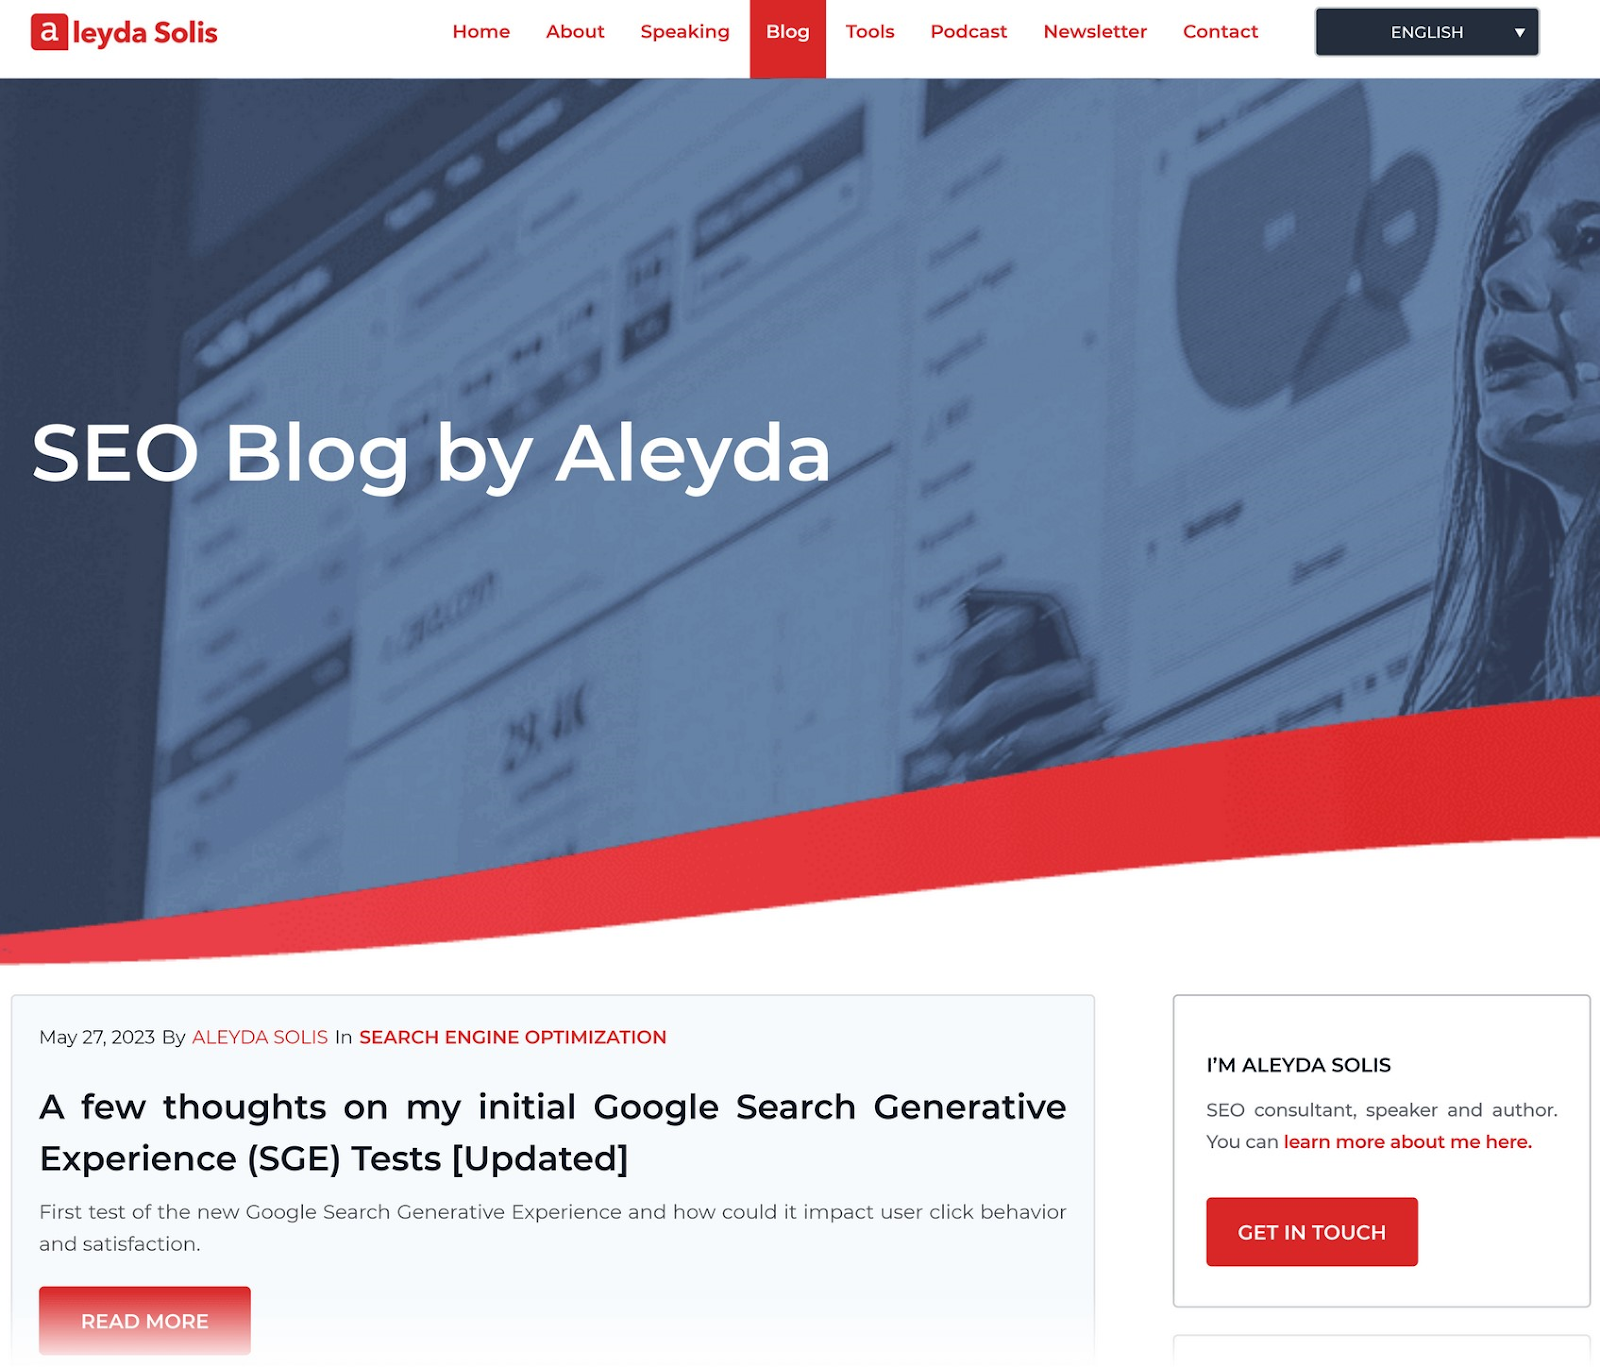 SEO Blog by Aleyda homepage